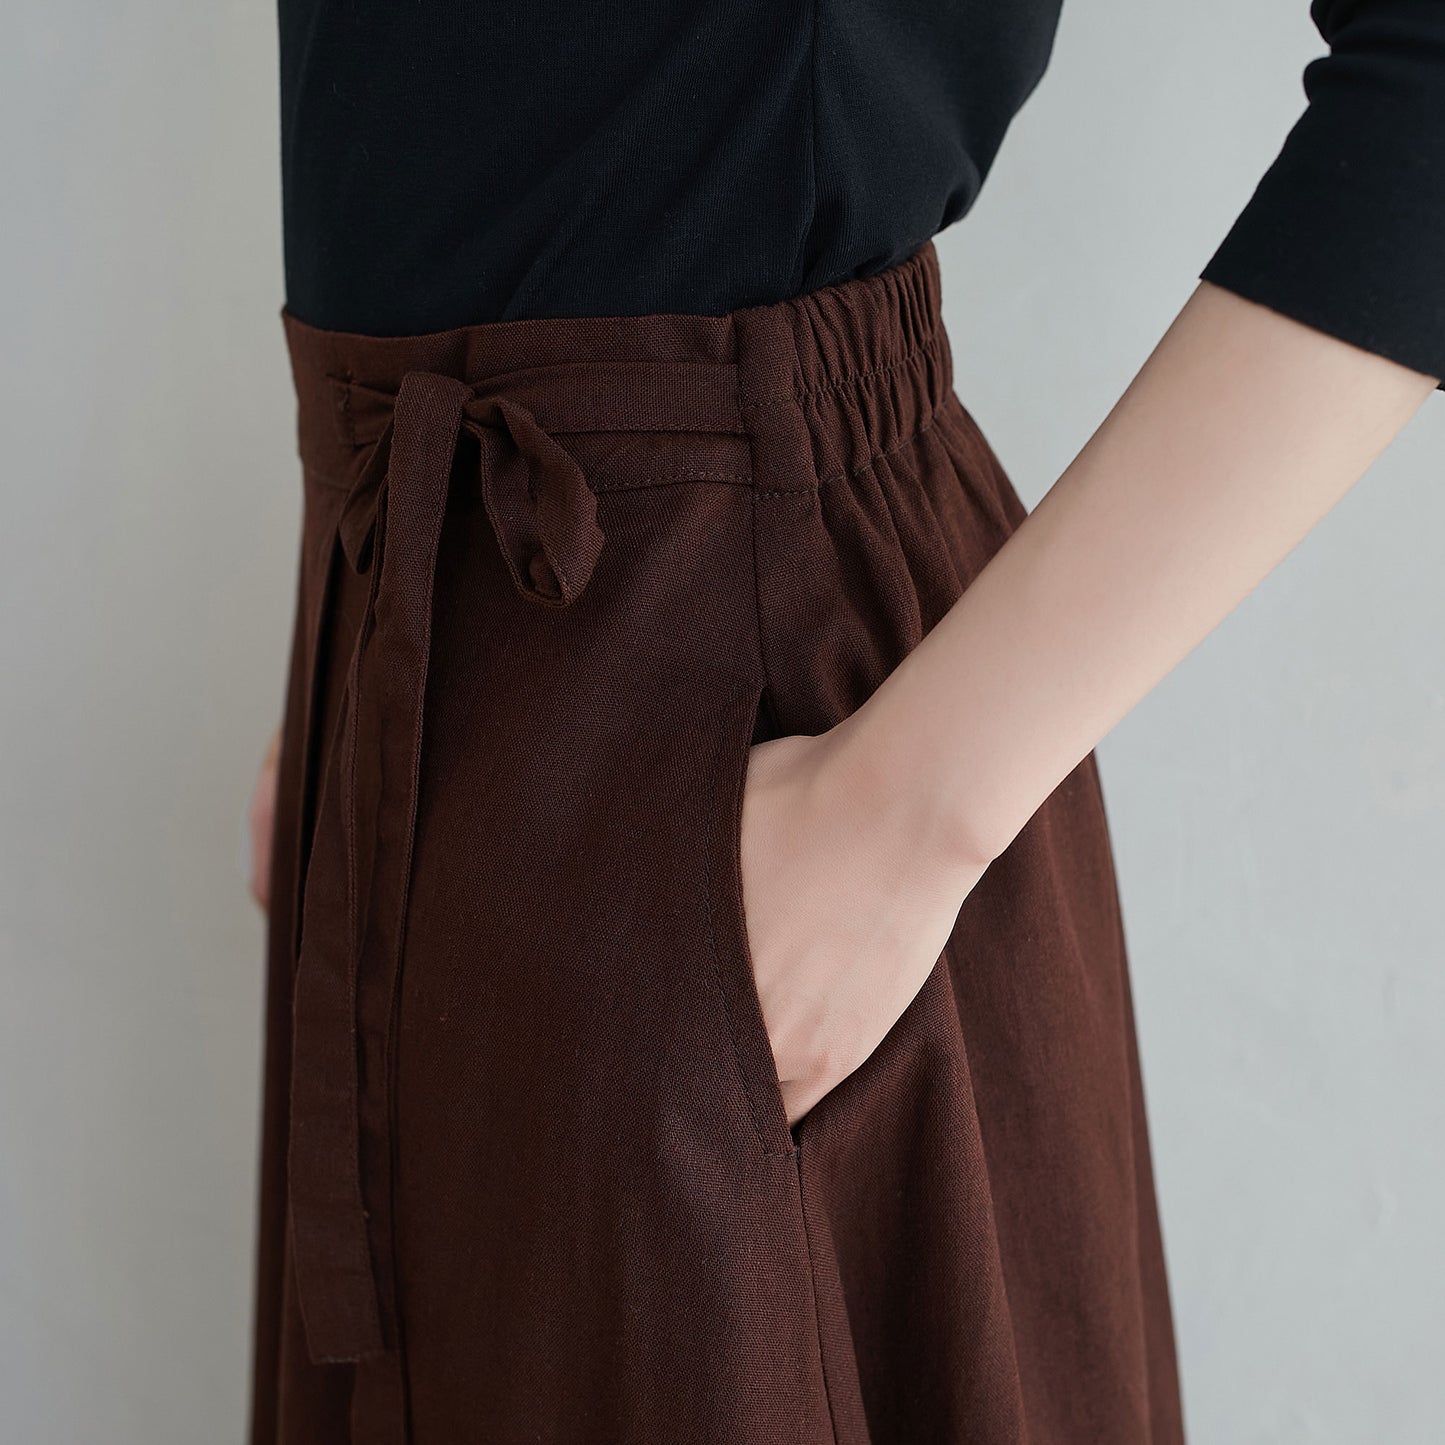 Casual Brown Long Linen Wrap Skirt 2553#